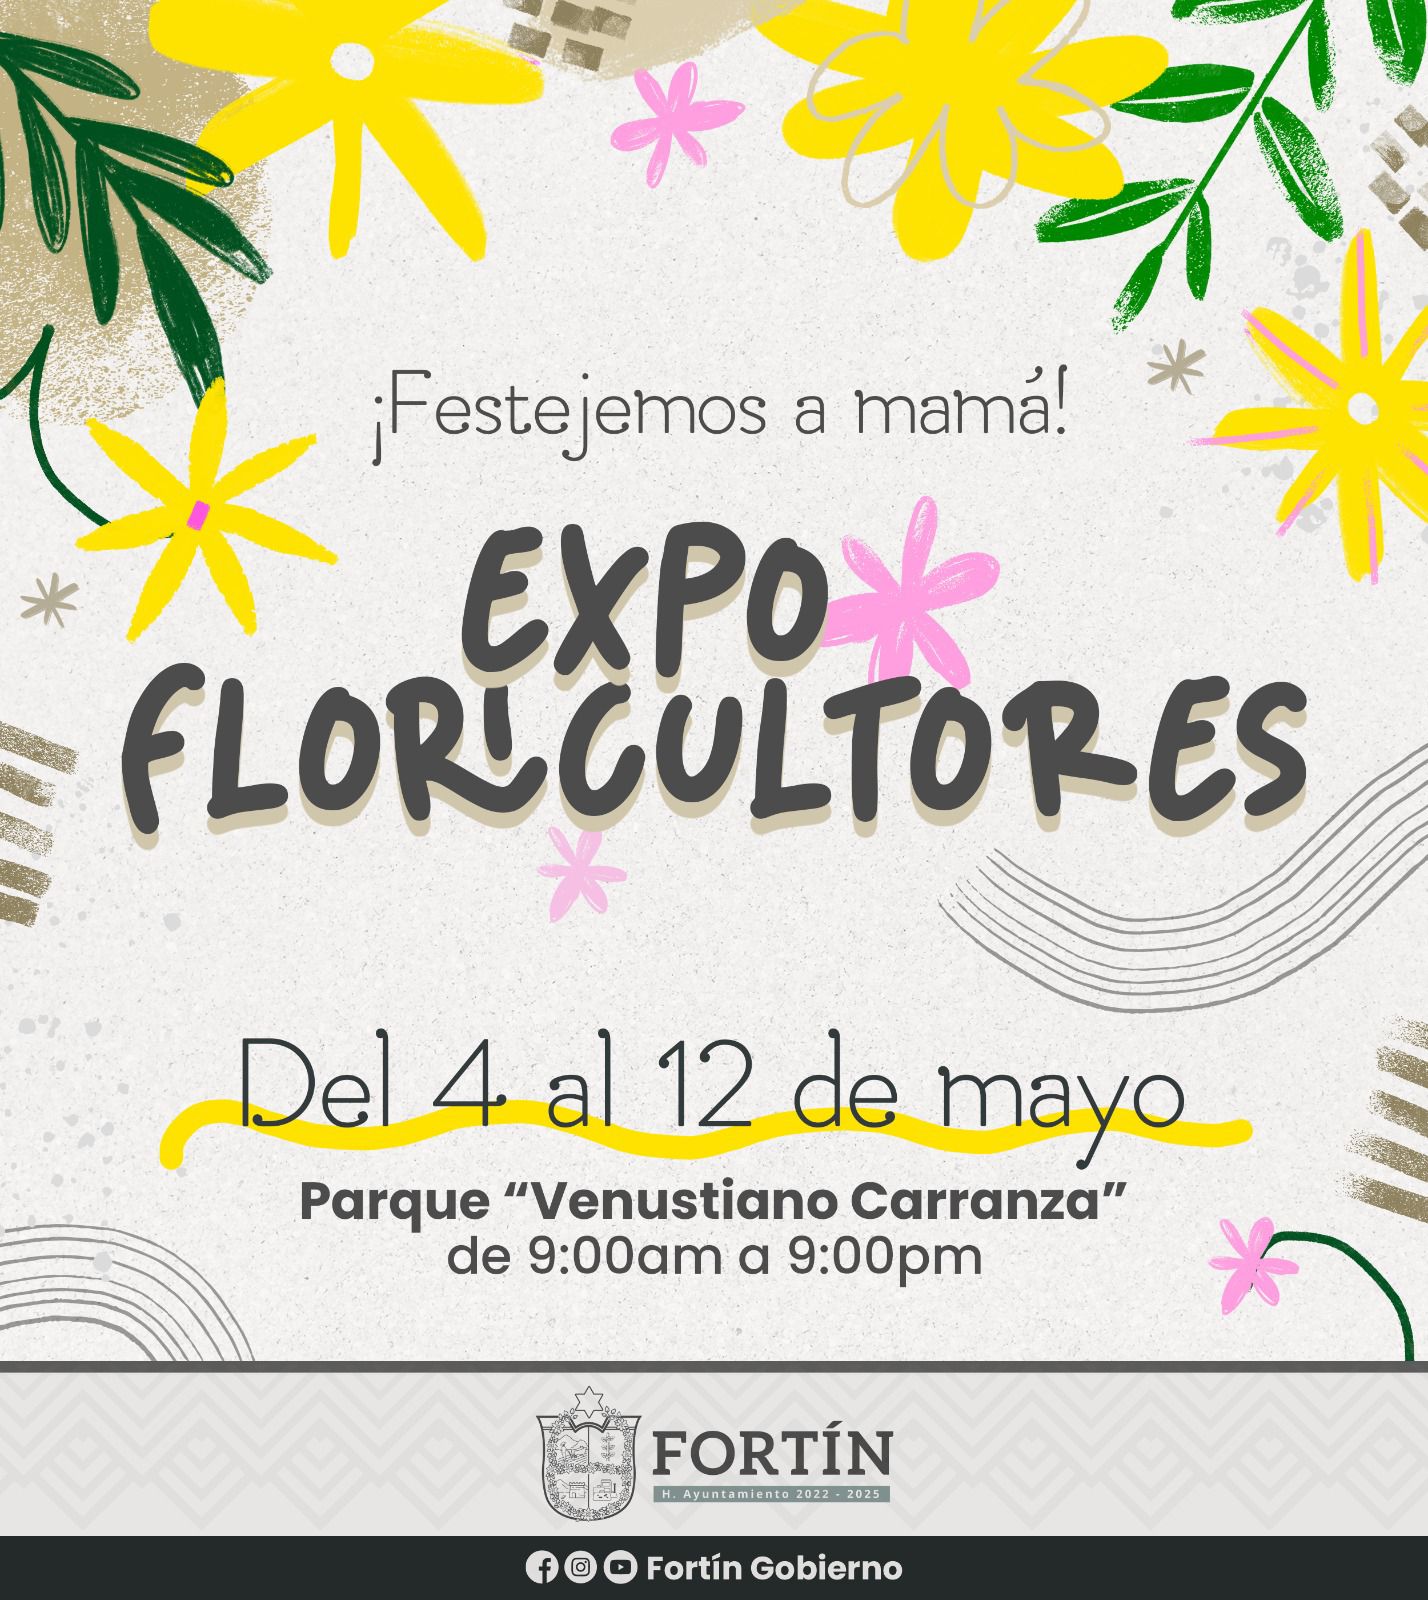 Anuncian Expo floricultores en Fortín